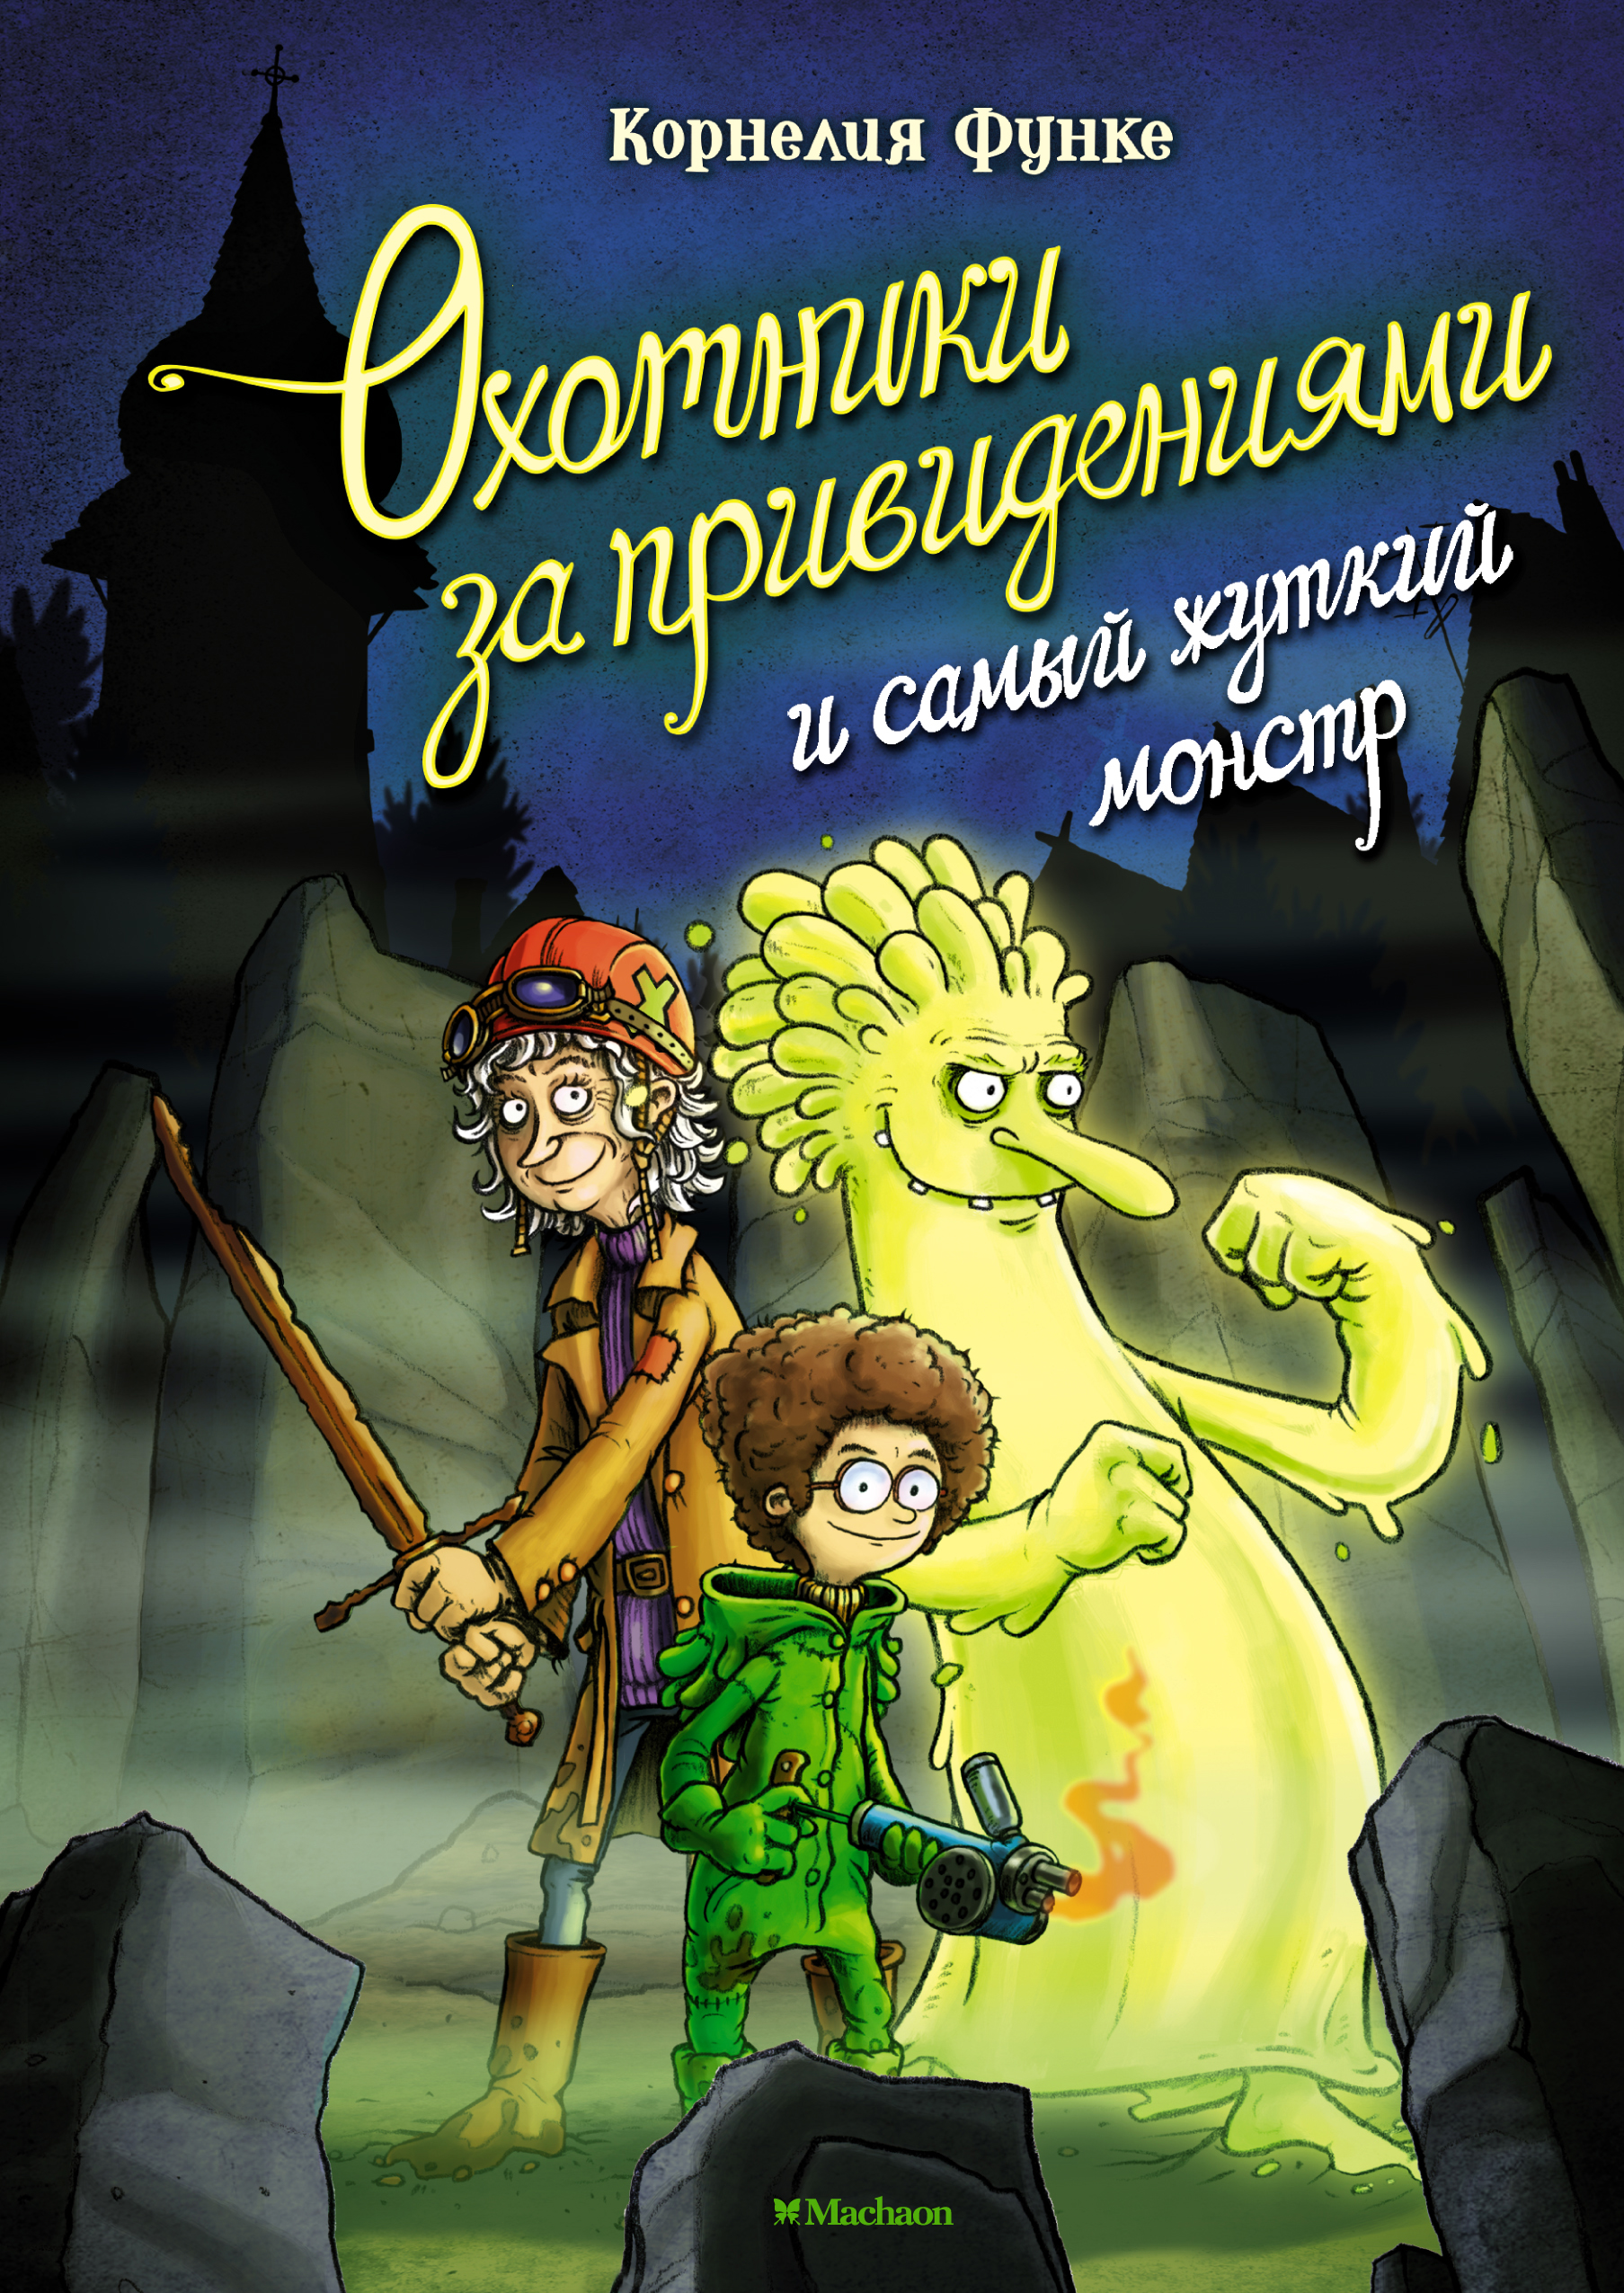 Функе Корнелия Охотники за привидениями и самый жуткий монстр функе корнелия охотники за привидениями в огне книга 2